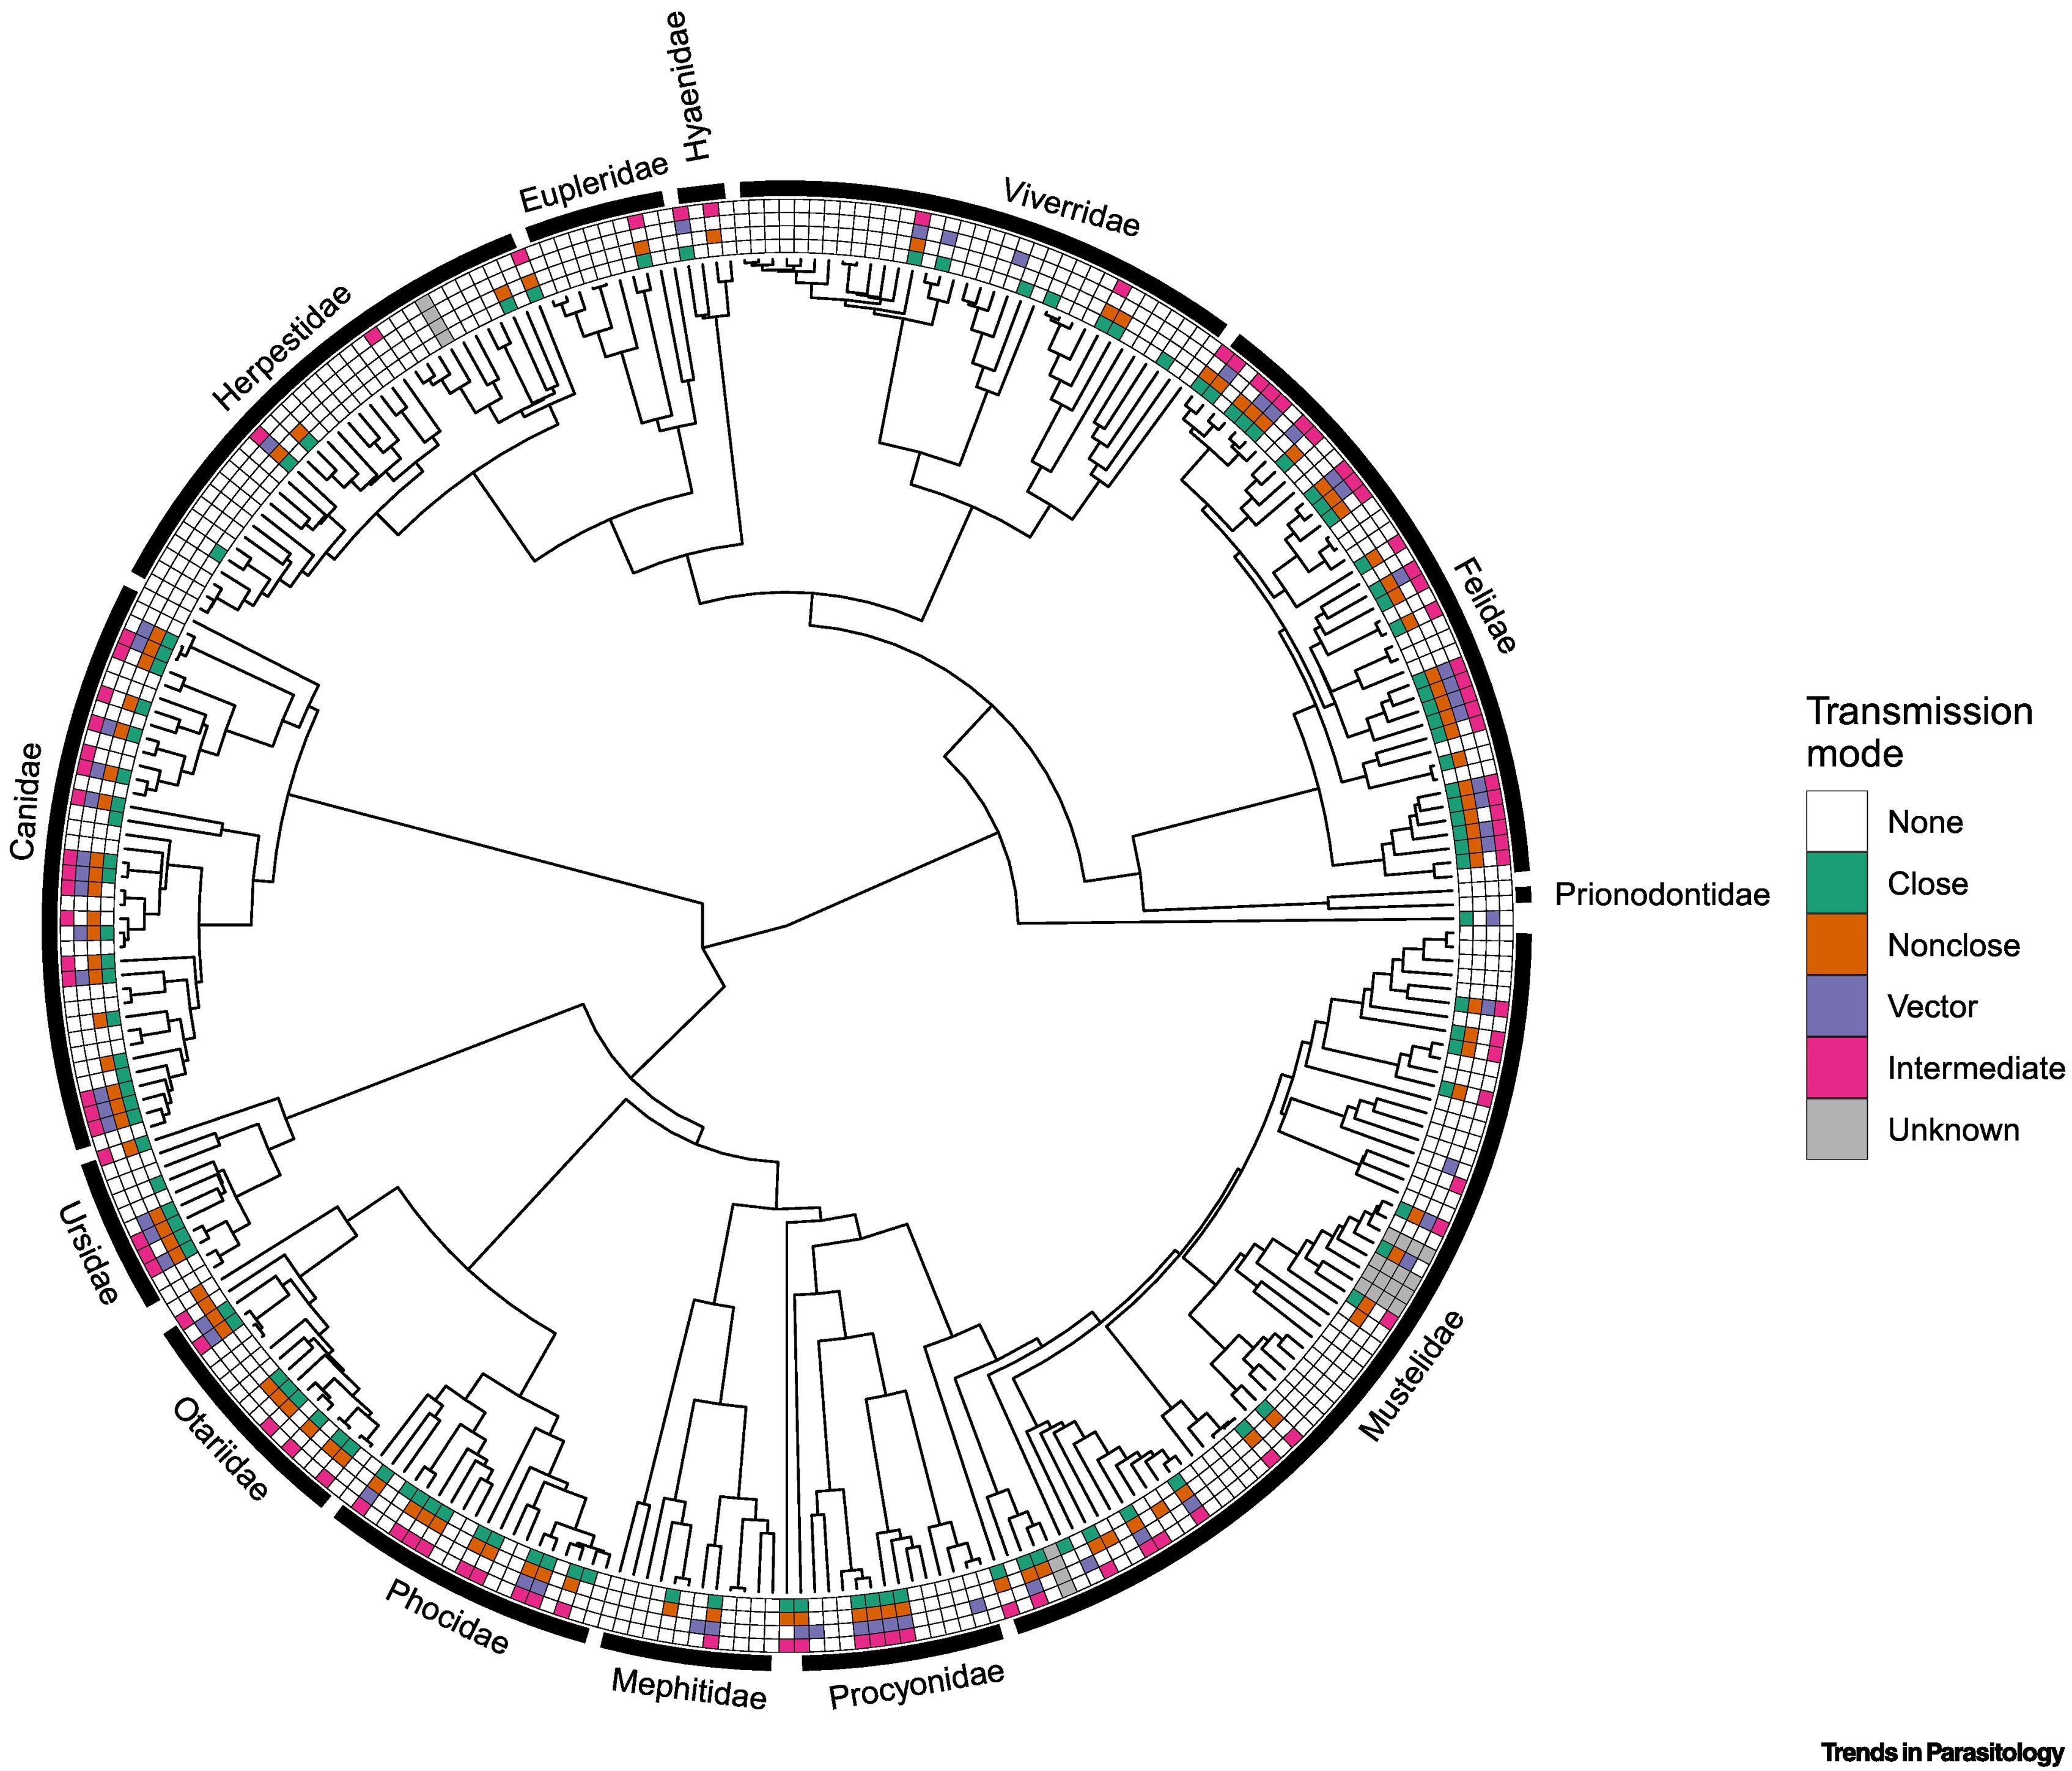 Hospederos zoonóticos distribuidos a través del árbol filogenético Carnivora